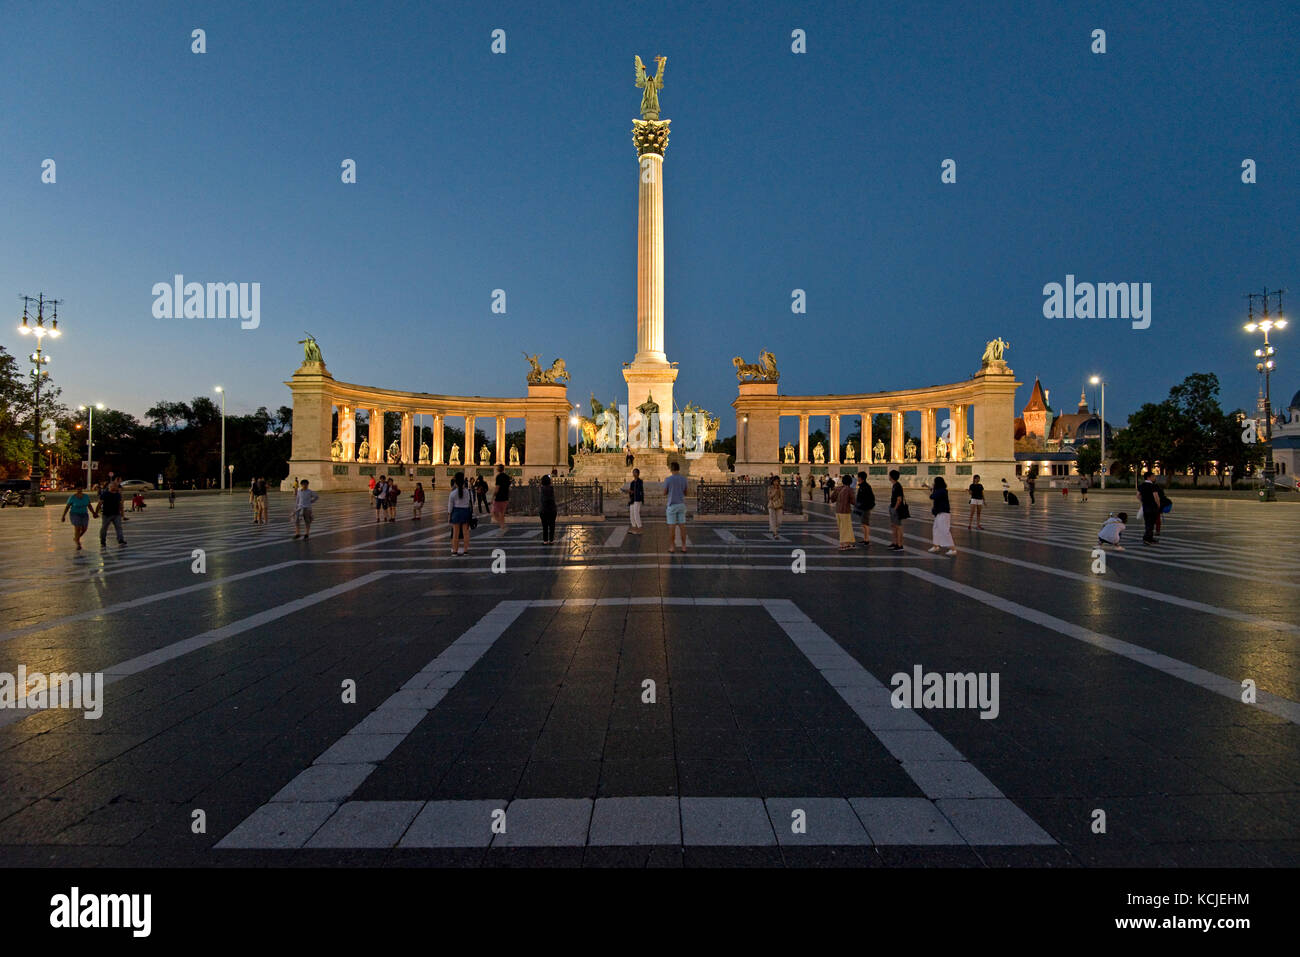 Una vista della Piazza degli Eroi - Hősök tere - a Budapest al tramonto serale. Foto Stock